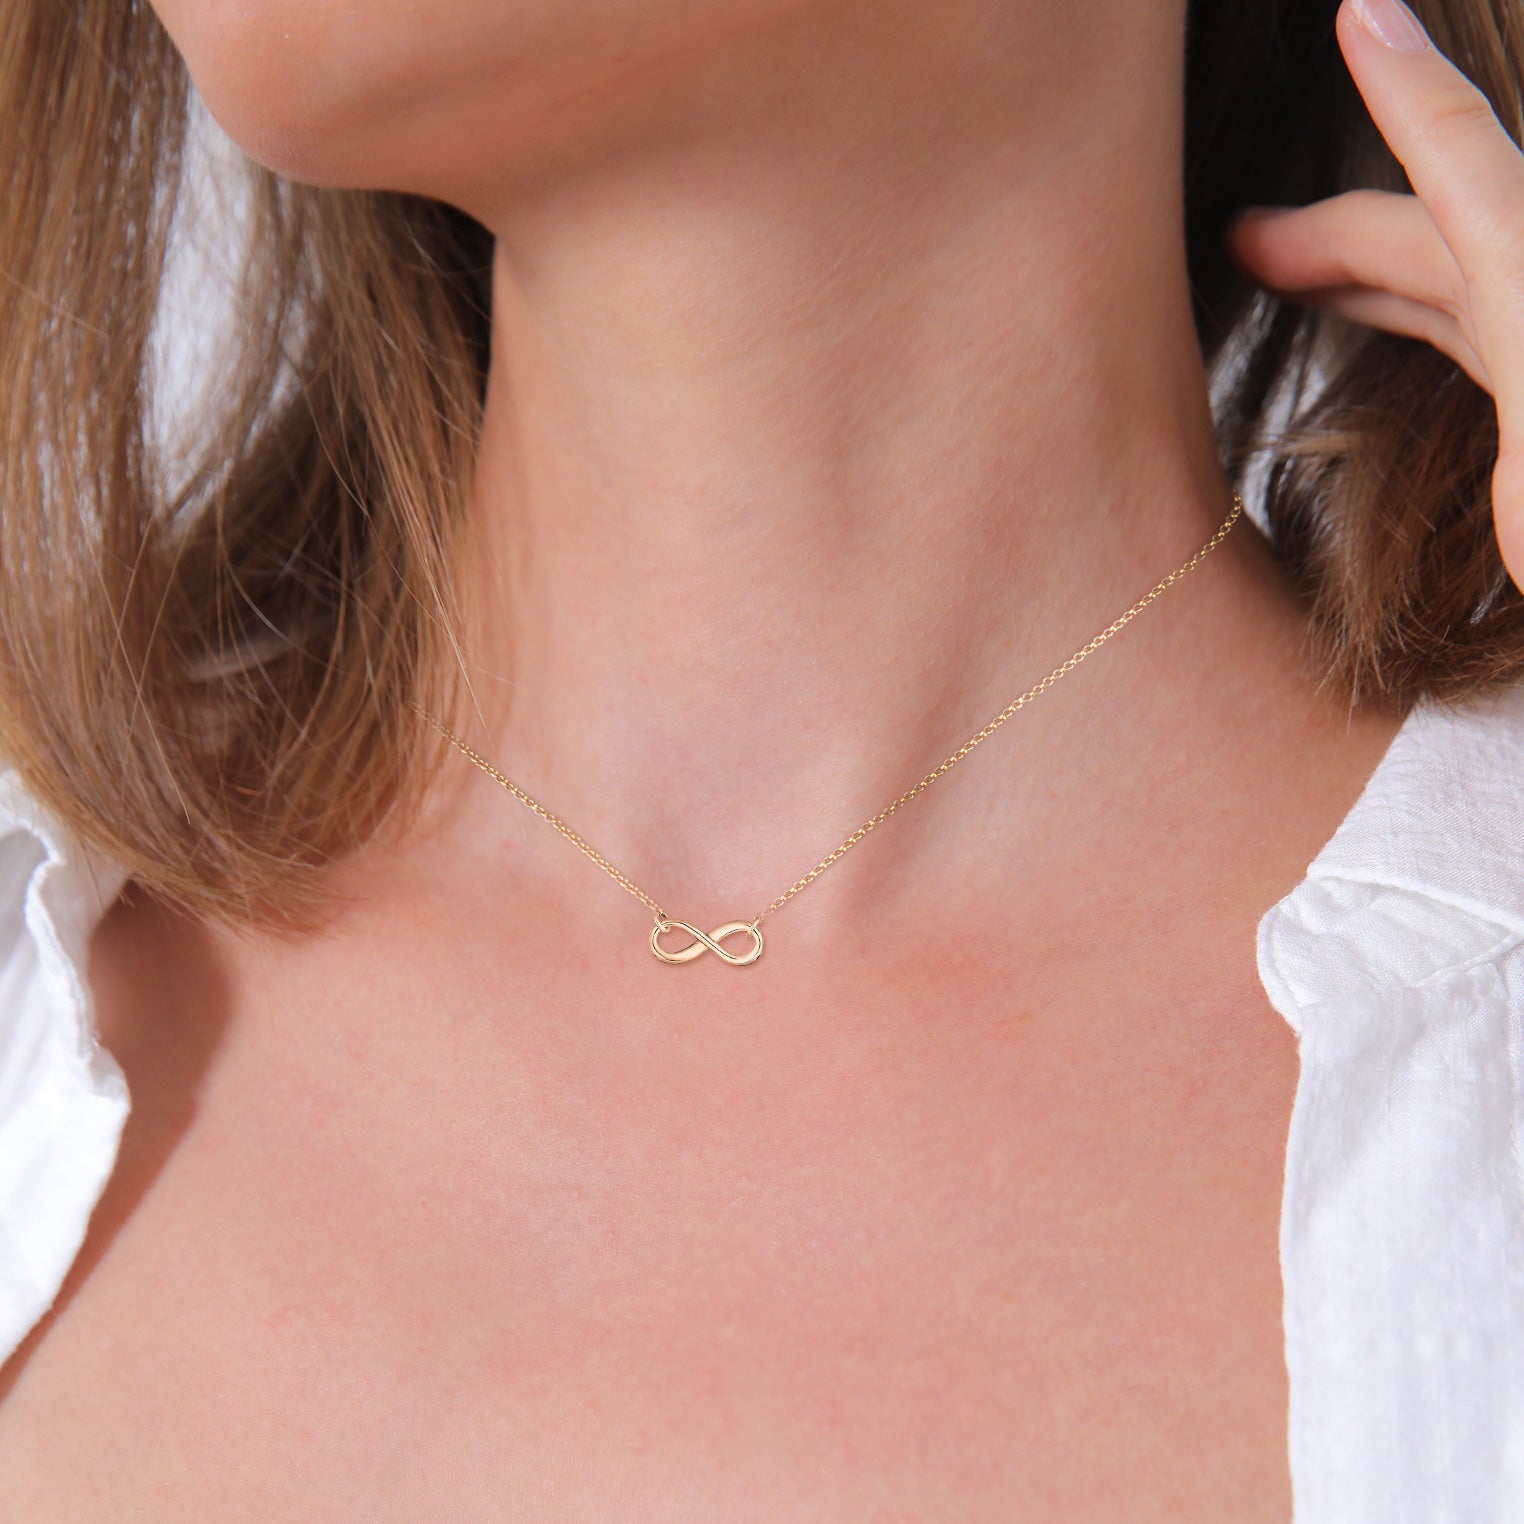 Zirconia Infinity Sideways Necklace (14K) – Popular J